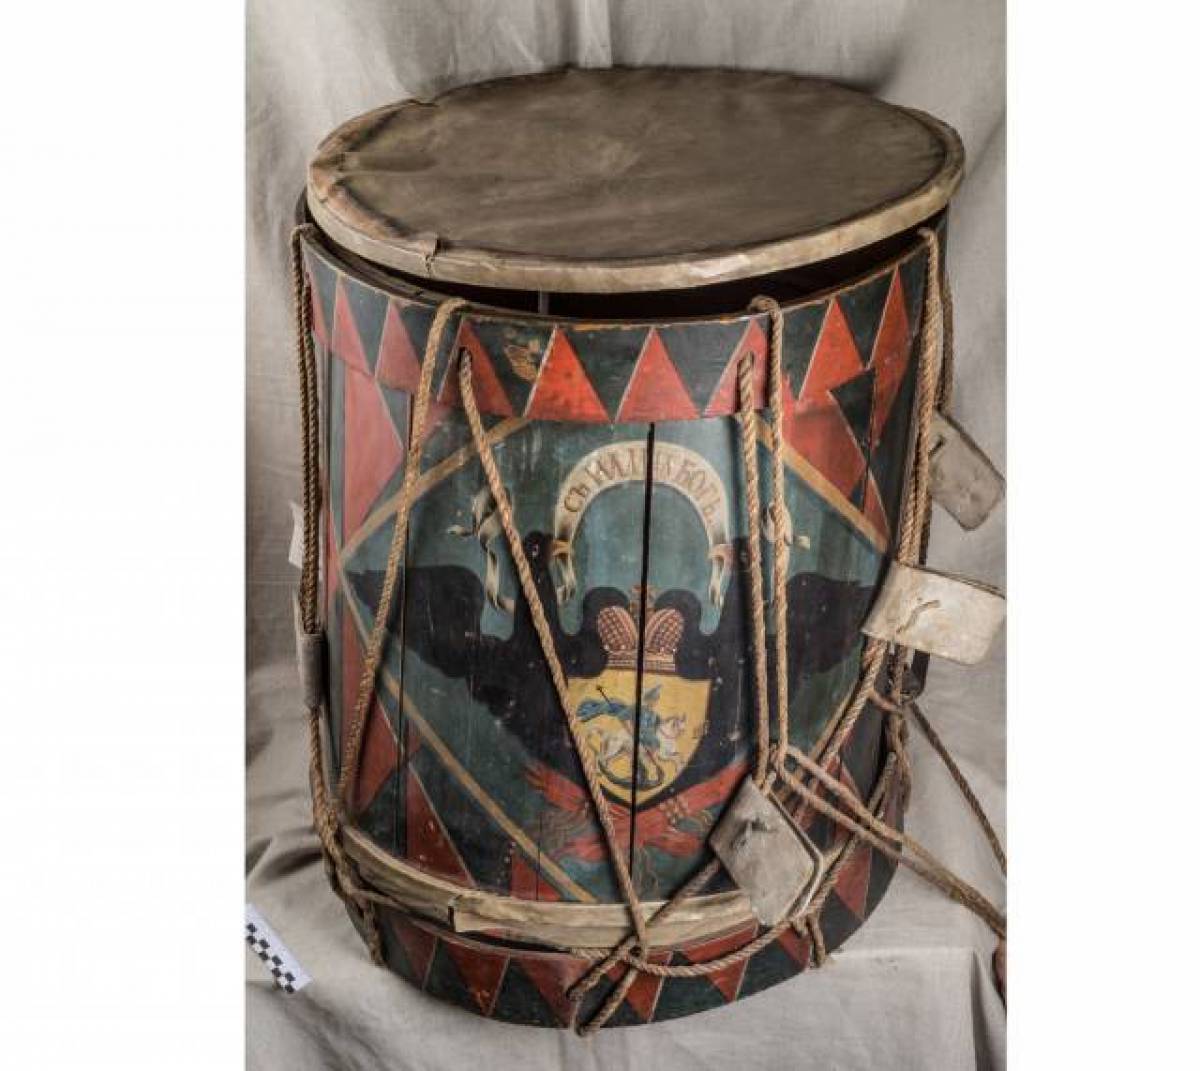 Так барабан выглядел до реставрации. А каким «мушкетёр» стал теперь, можно будет увидеть на выставке «Чесменская виктория».